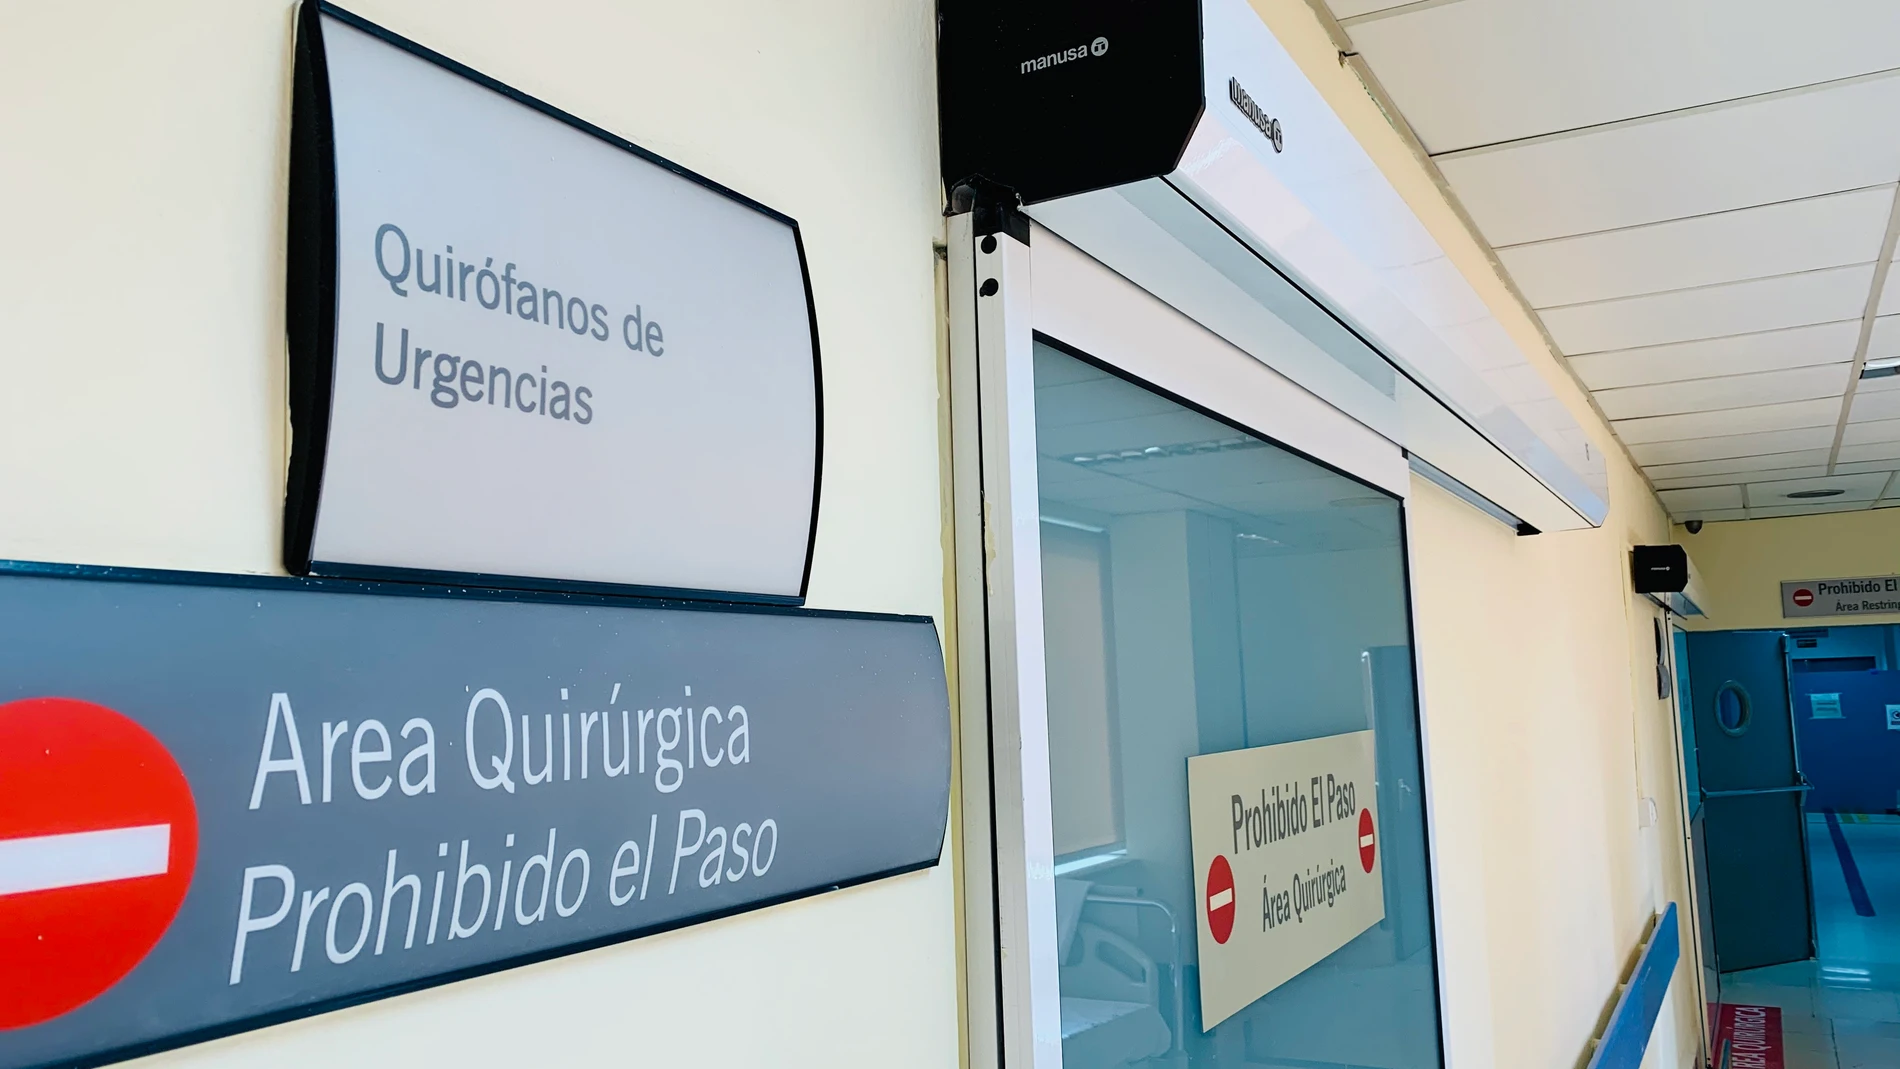 Málaga.-Hospital Clínico lleva a cabo reformas para mejorar accesibilidad y seguridad en área de quirófanos de Urgencias